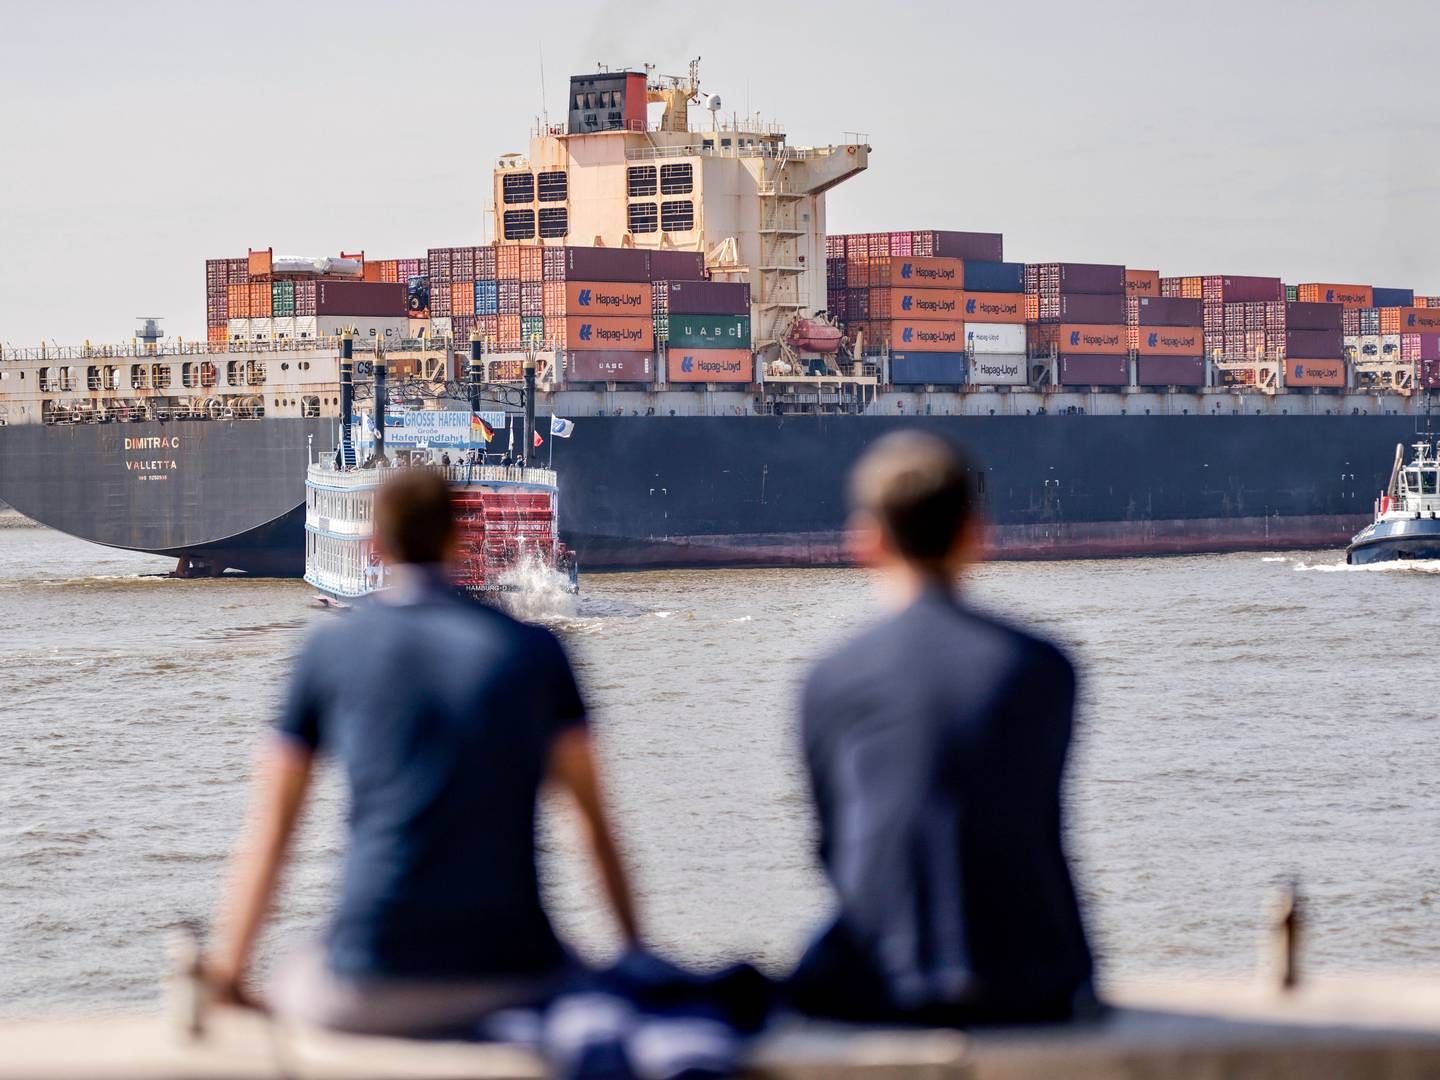 Den globale klimamål for shippingindustrien blev vedtaget i 2018 og lyder på en reduktion på 50 pct. i 2050 i forhold til 2008, hvor udledningen toppede. Mange håber på, at kravet nu bliver strammet. | Foto: Axel Heimken/AP/Ritzau Scanpix